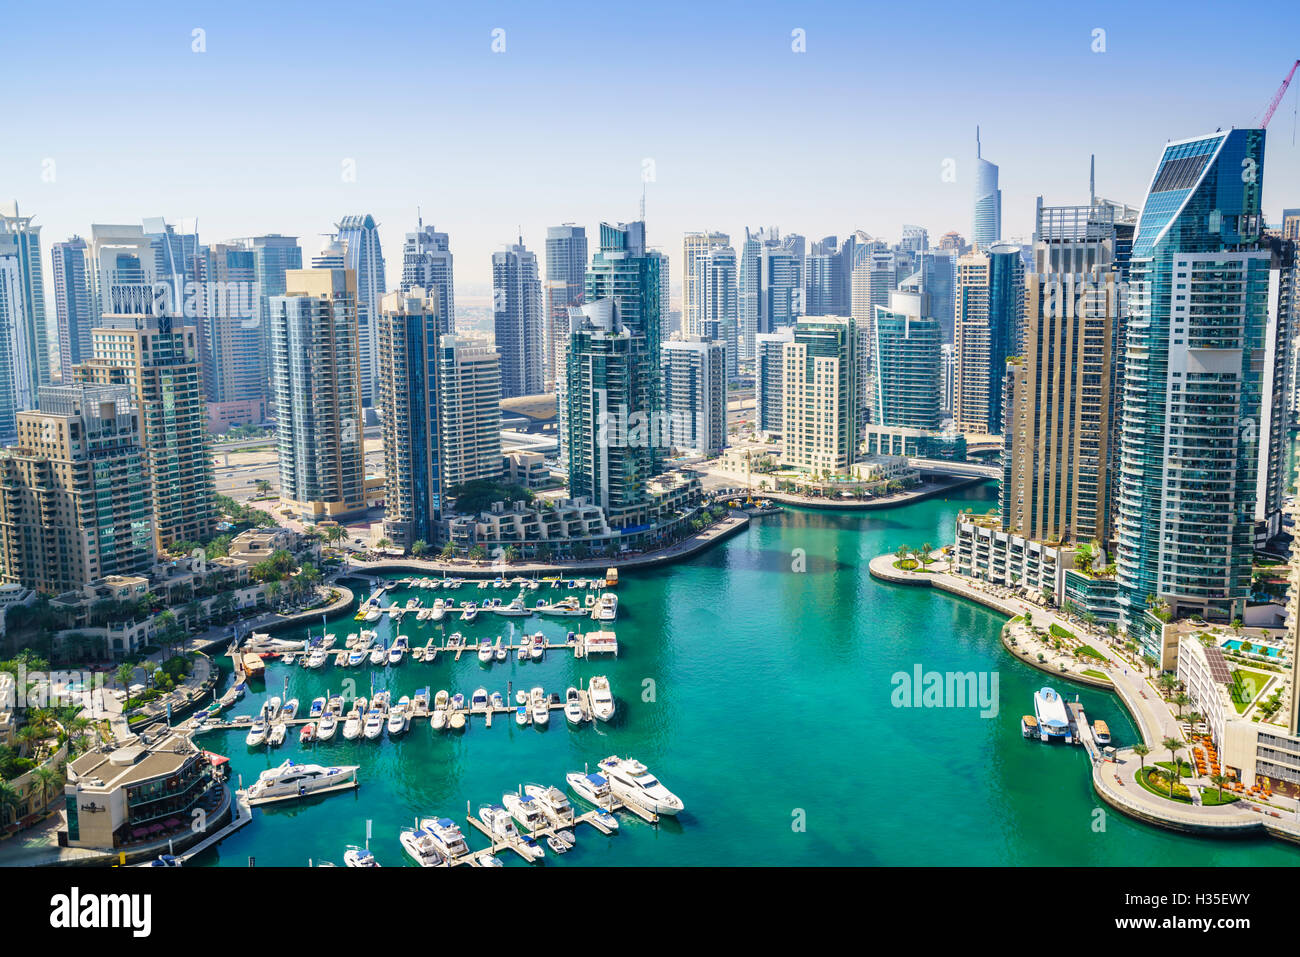 High view of Dubai Marina, Dubai, United Arab Emirates, Middle East Stock Photo